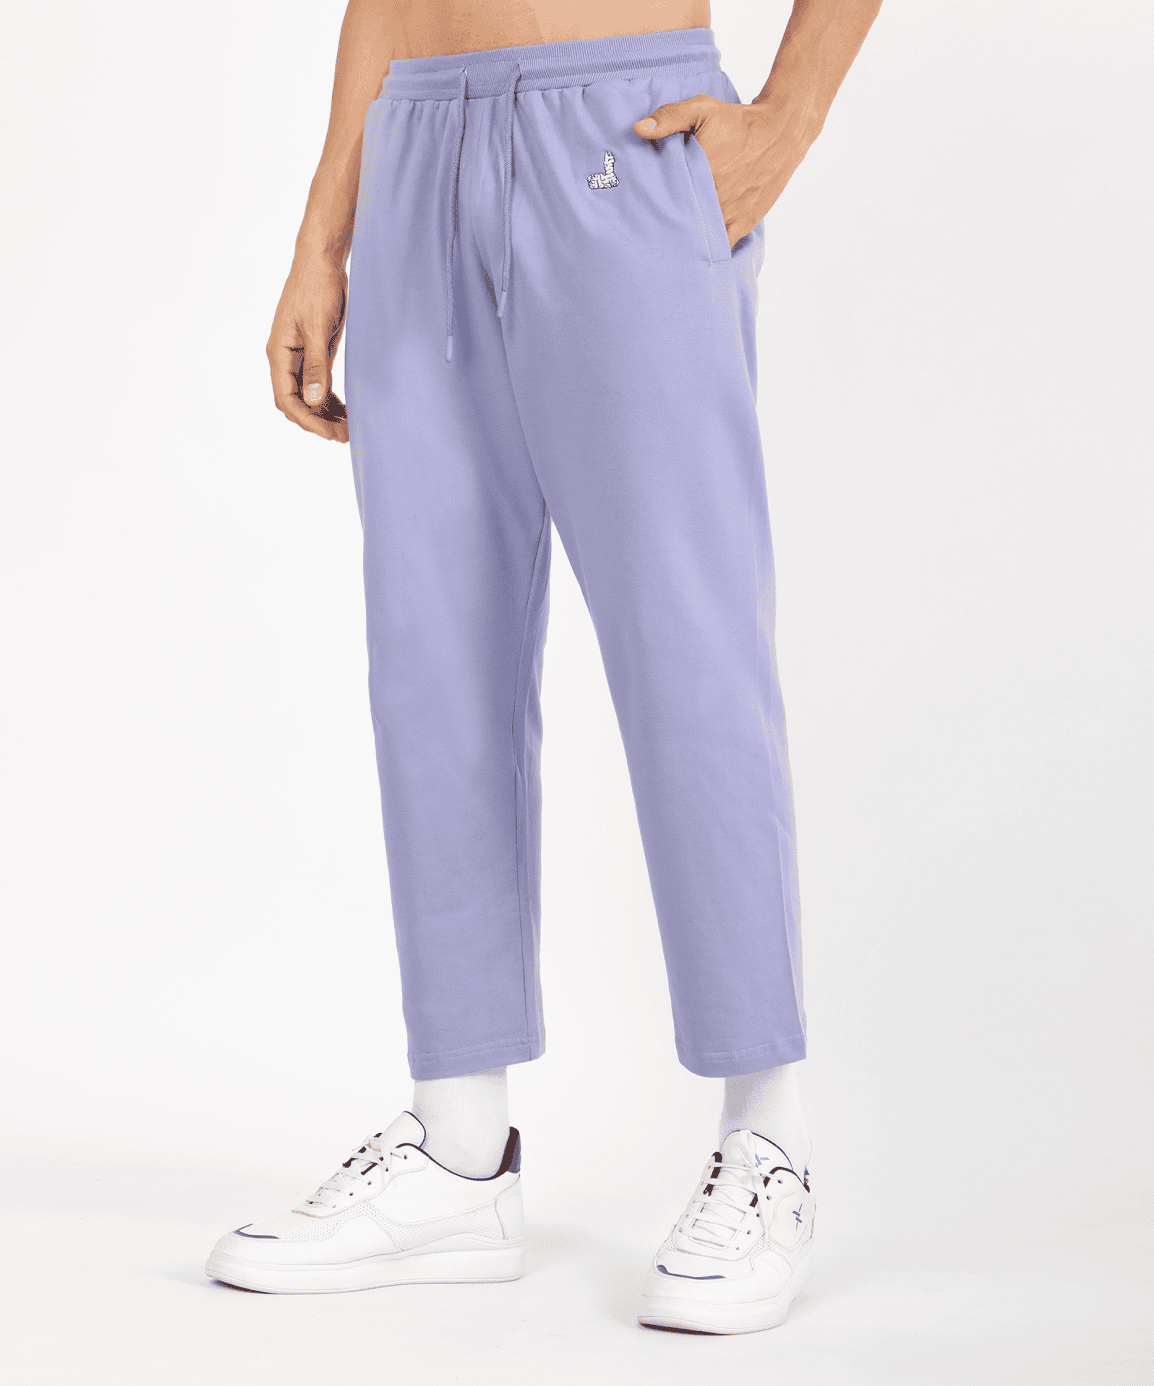 Too Cool Purple Unisex Pants